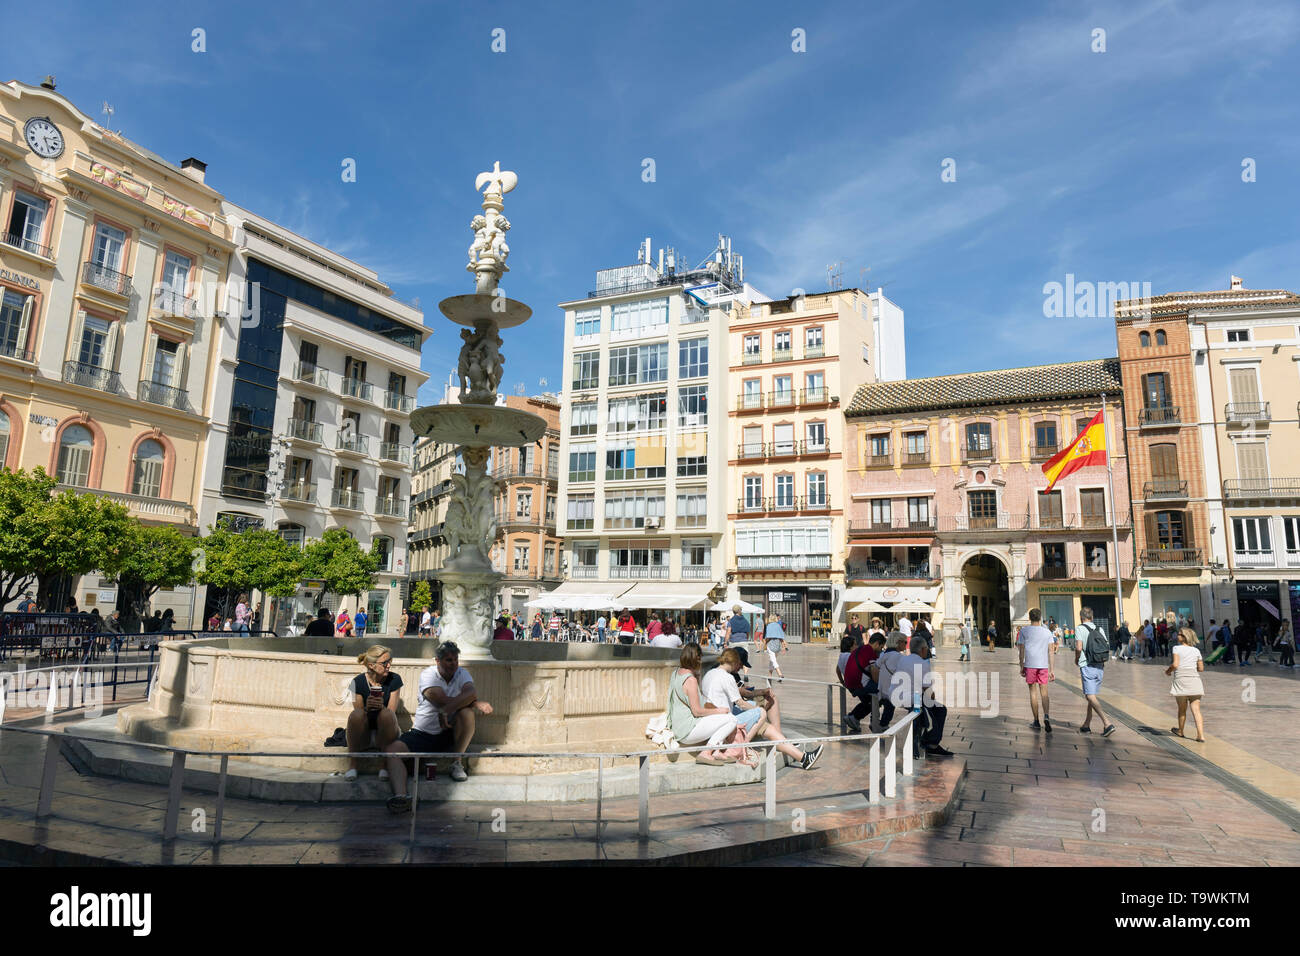 Plaza de la Constitucion, la Piazza della Costituzione, Malaga, Costa del Sol, provincia di Malaga, Andalusia, Spagna meridionale. La fontana è la Fuente de Genov Foto Stock